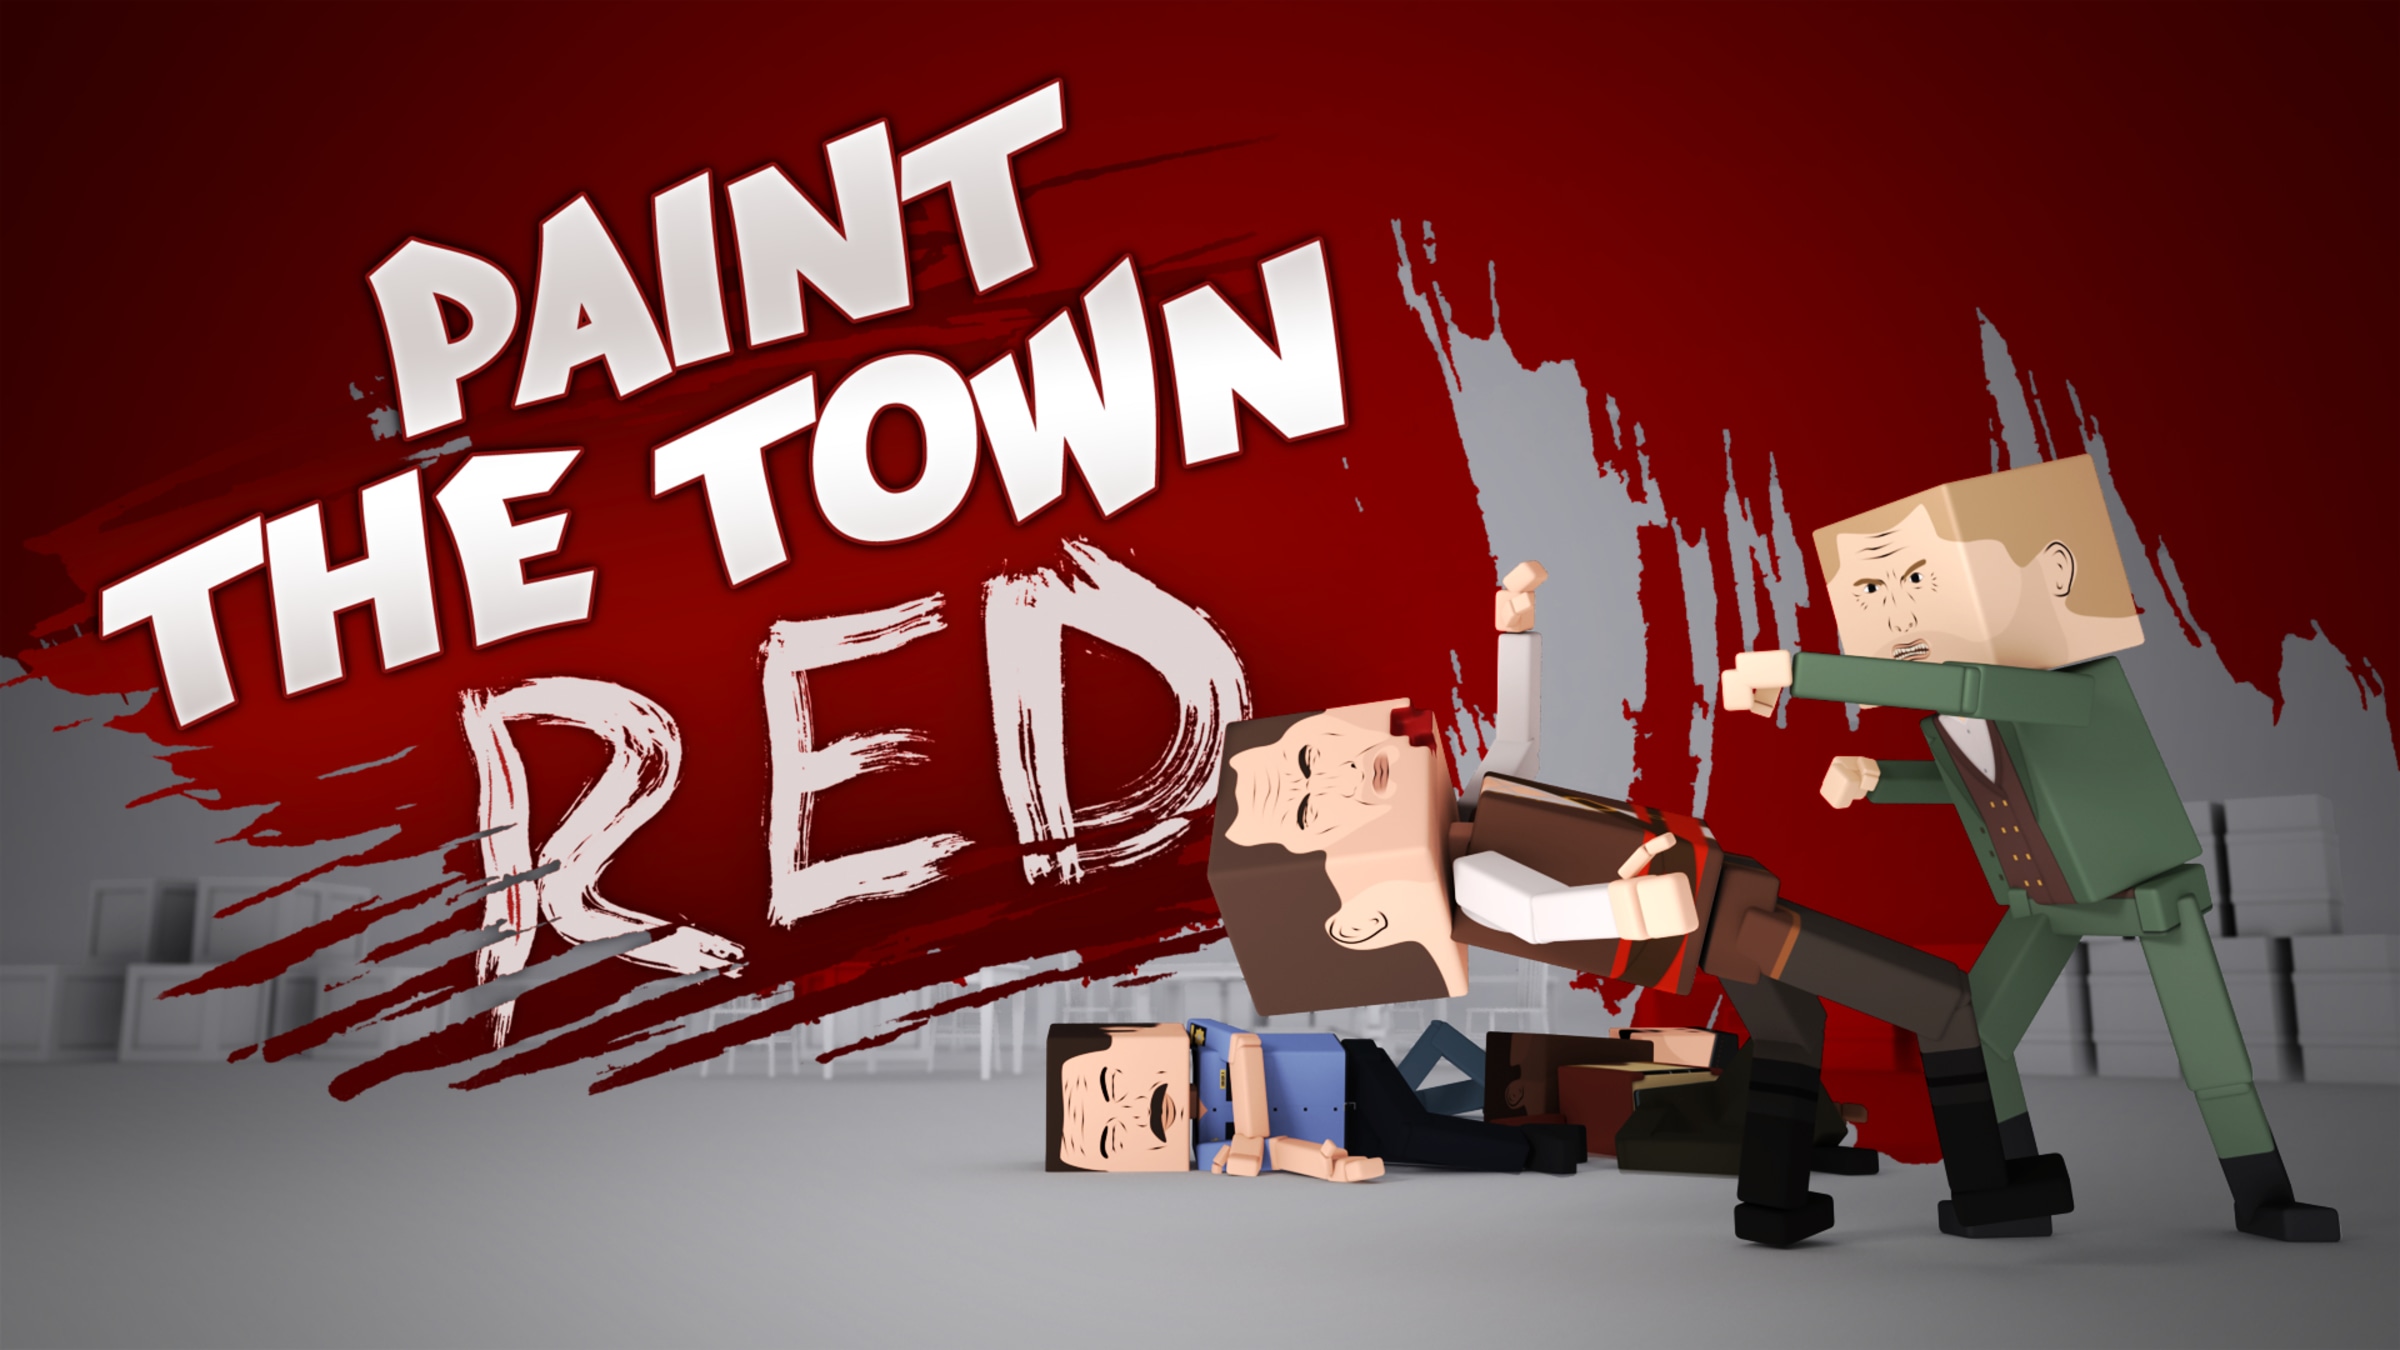 Secréte Tag telefonen Taktil sans Paint the Town Red for Nintendo Switch - Nintendo Official Site